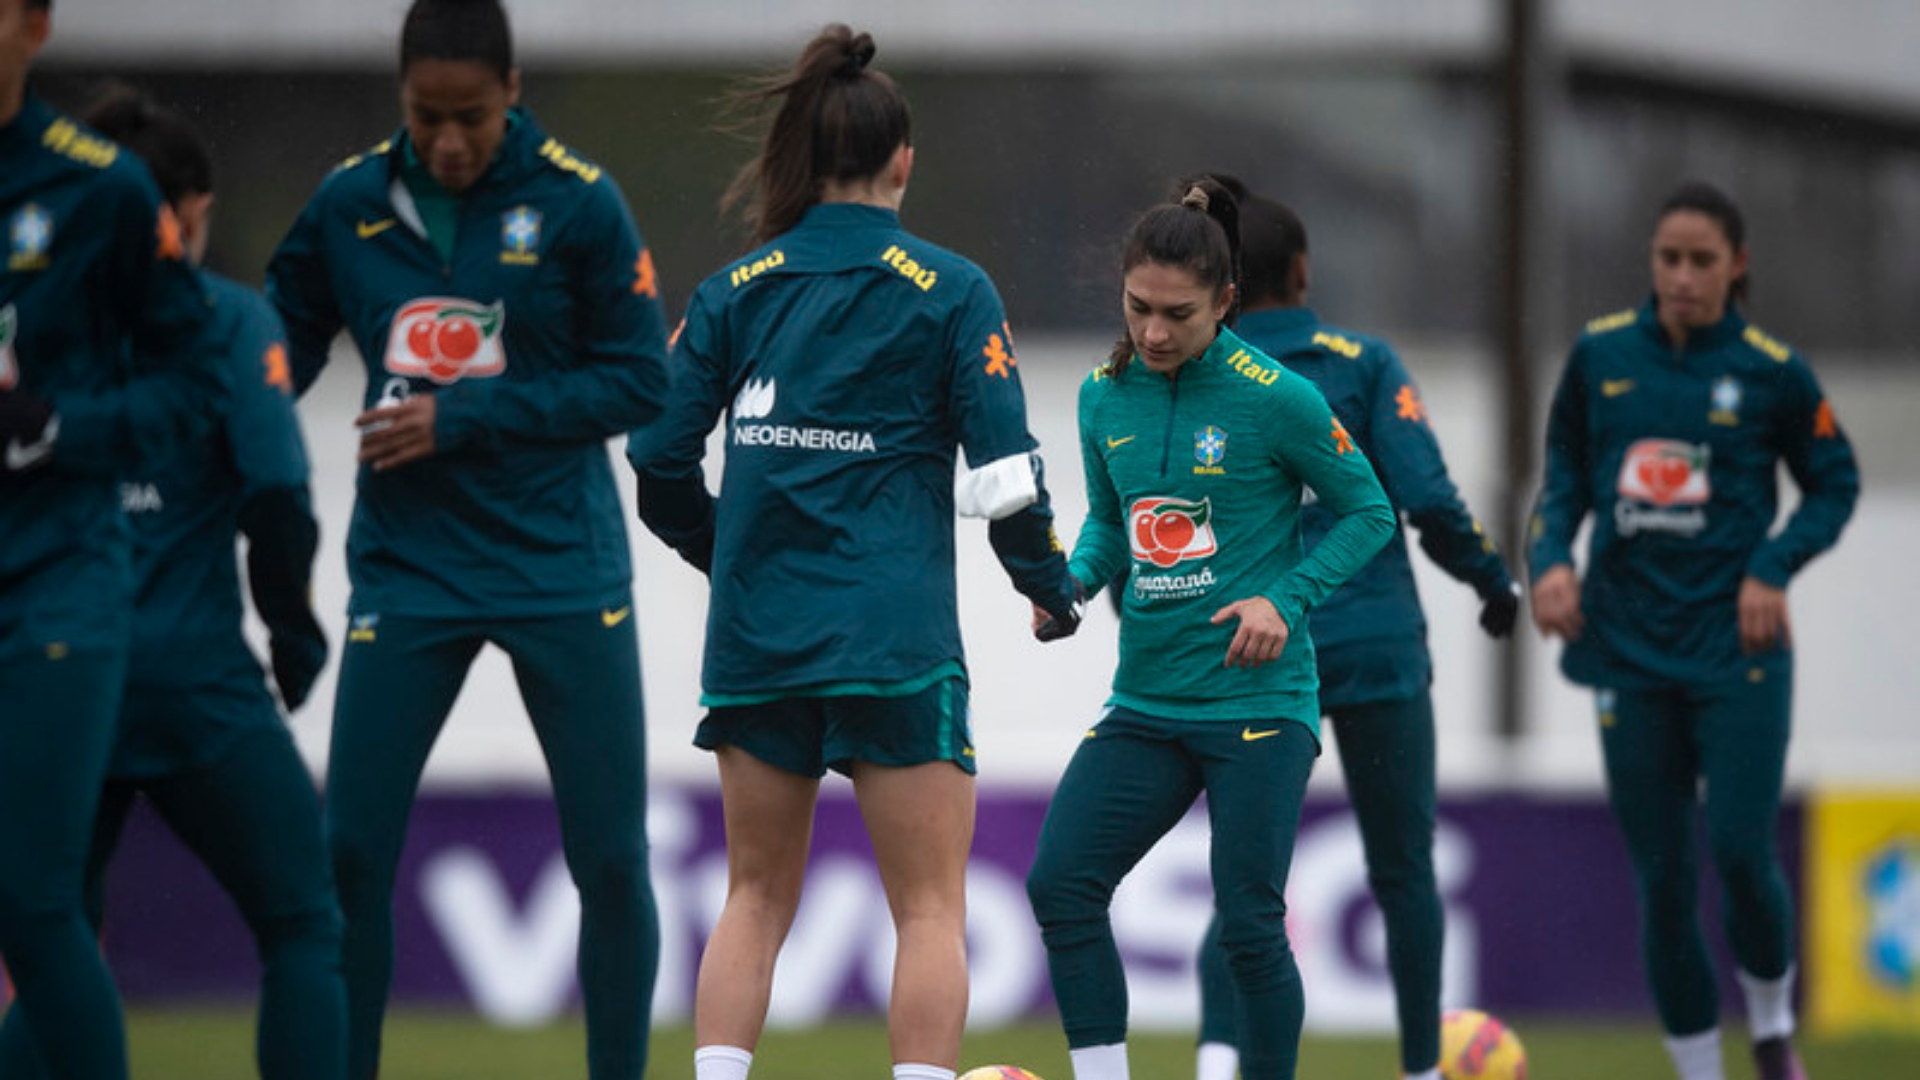 Jogadoras da Seleção Brasileira Feminina no treino antes do Torneio da França